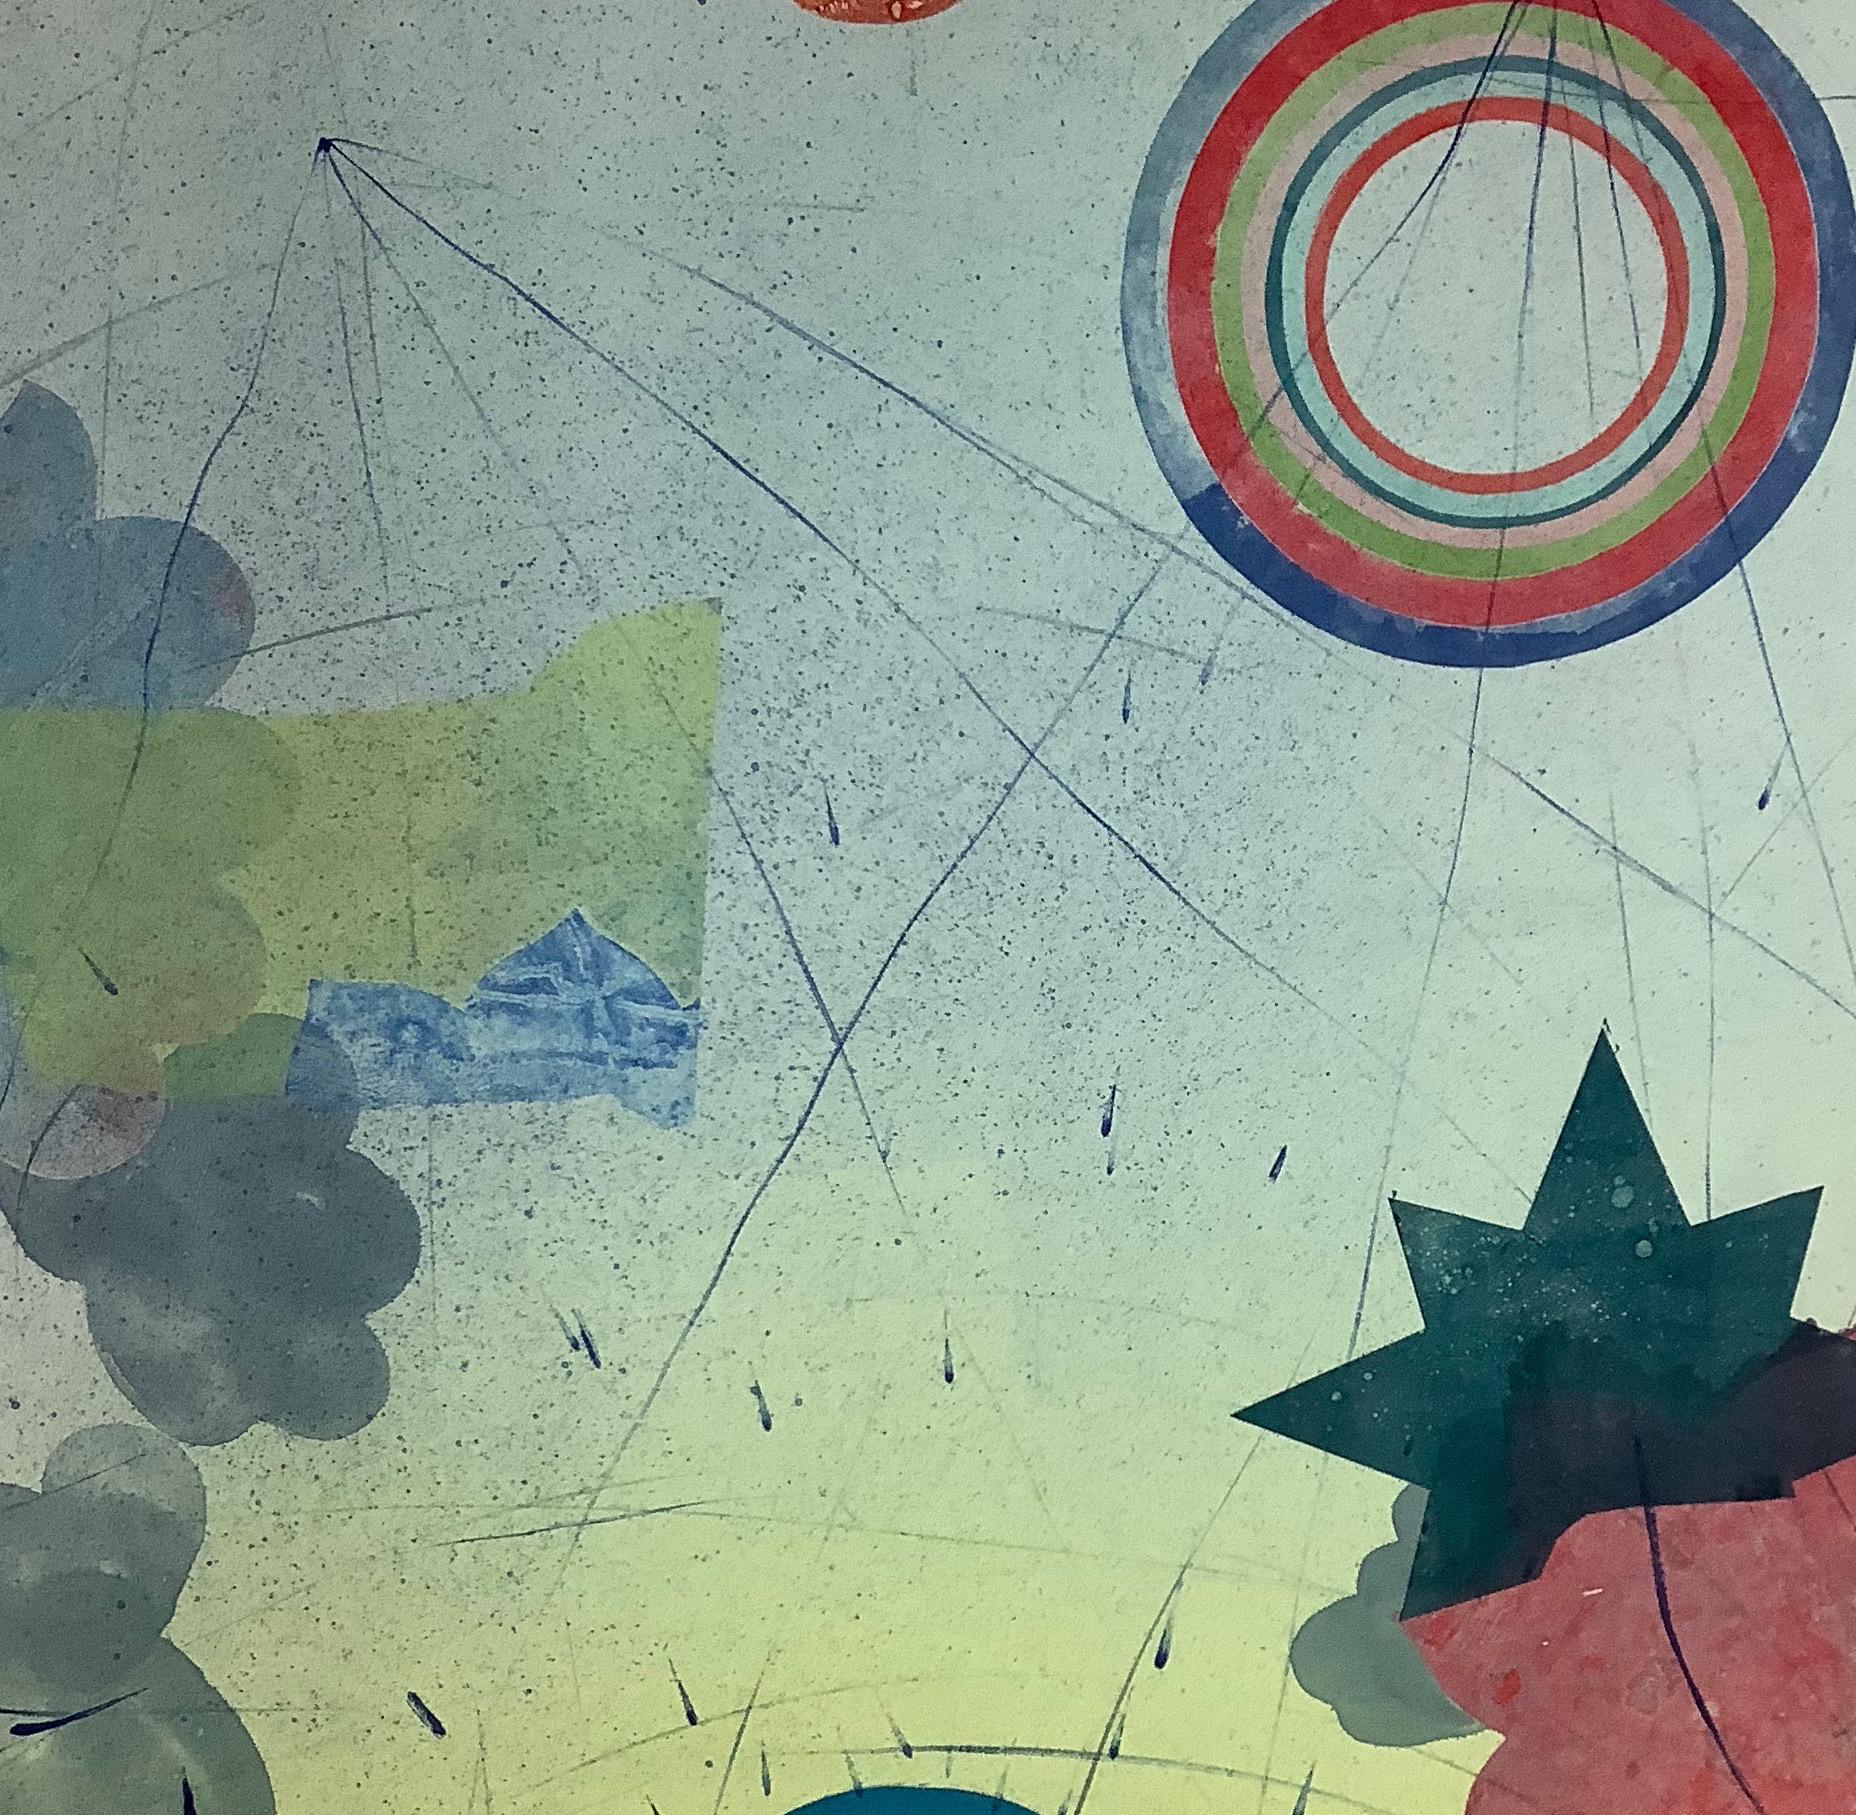 Pilot 22, vertikale abstrakte Monotypie, Teal Blau, Gelb, Koralle, Kreise, Sterne – Print von David Collins